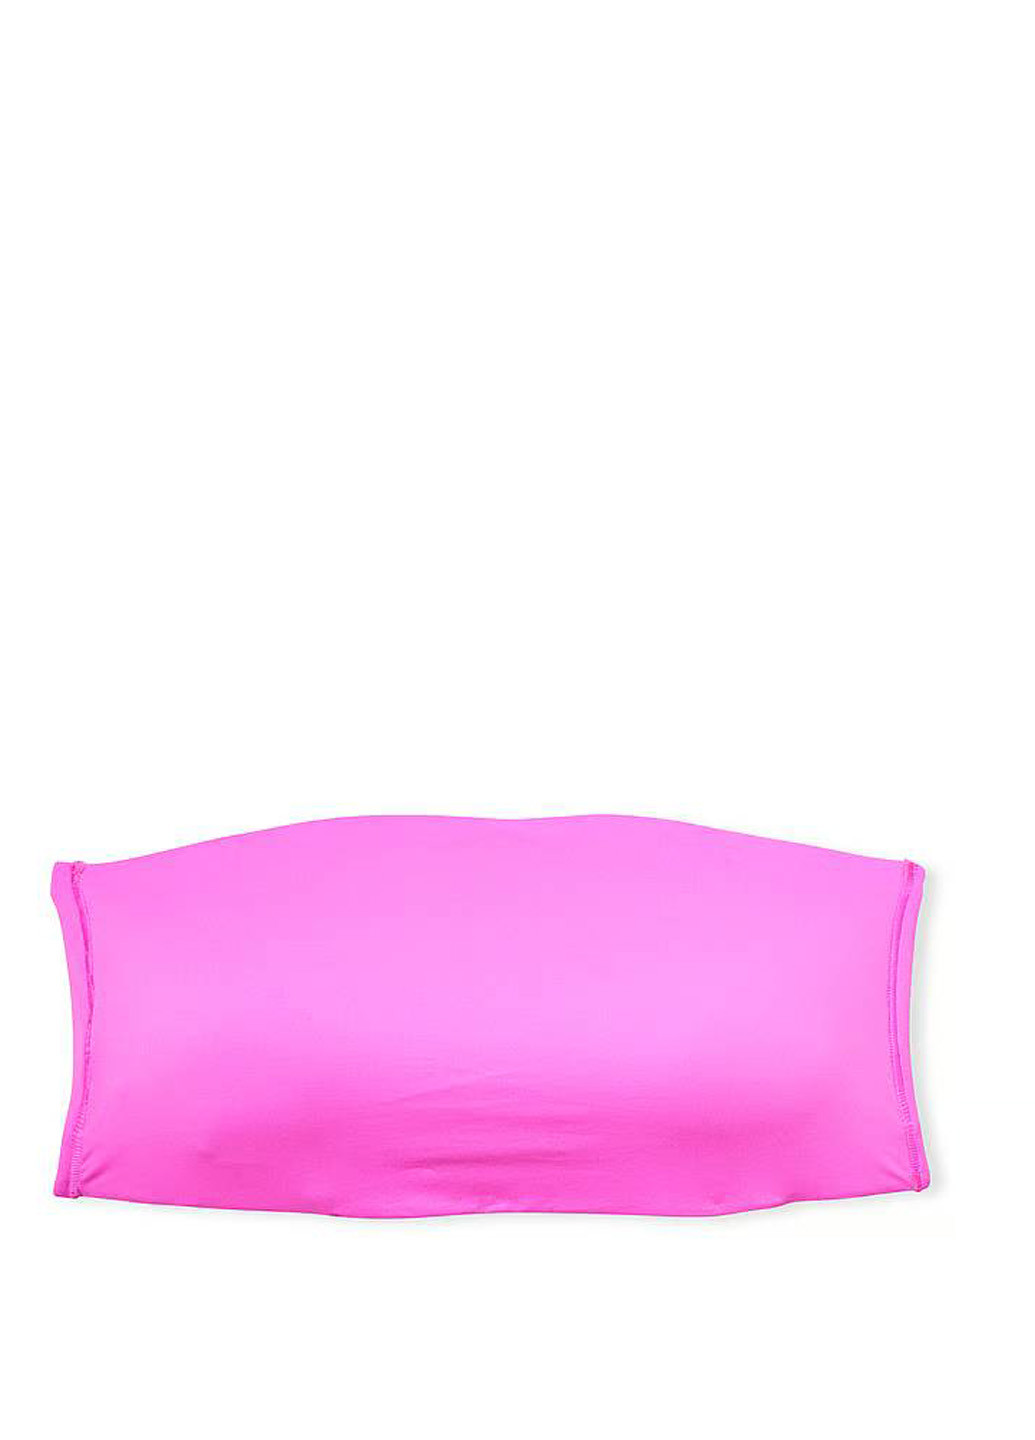 Розовый топ бюстгальтер Victoria's Secret без косточек полиамид